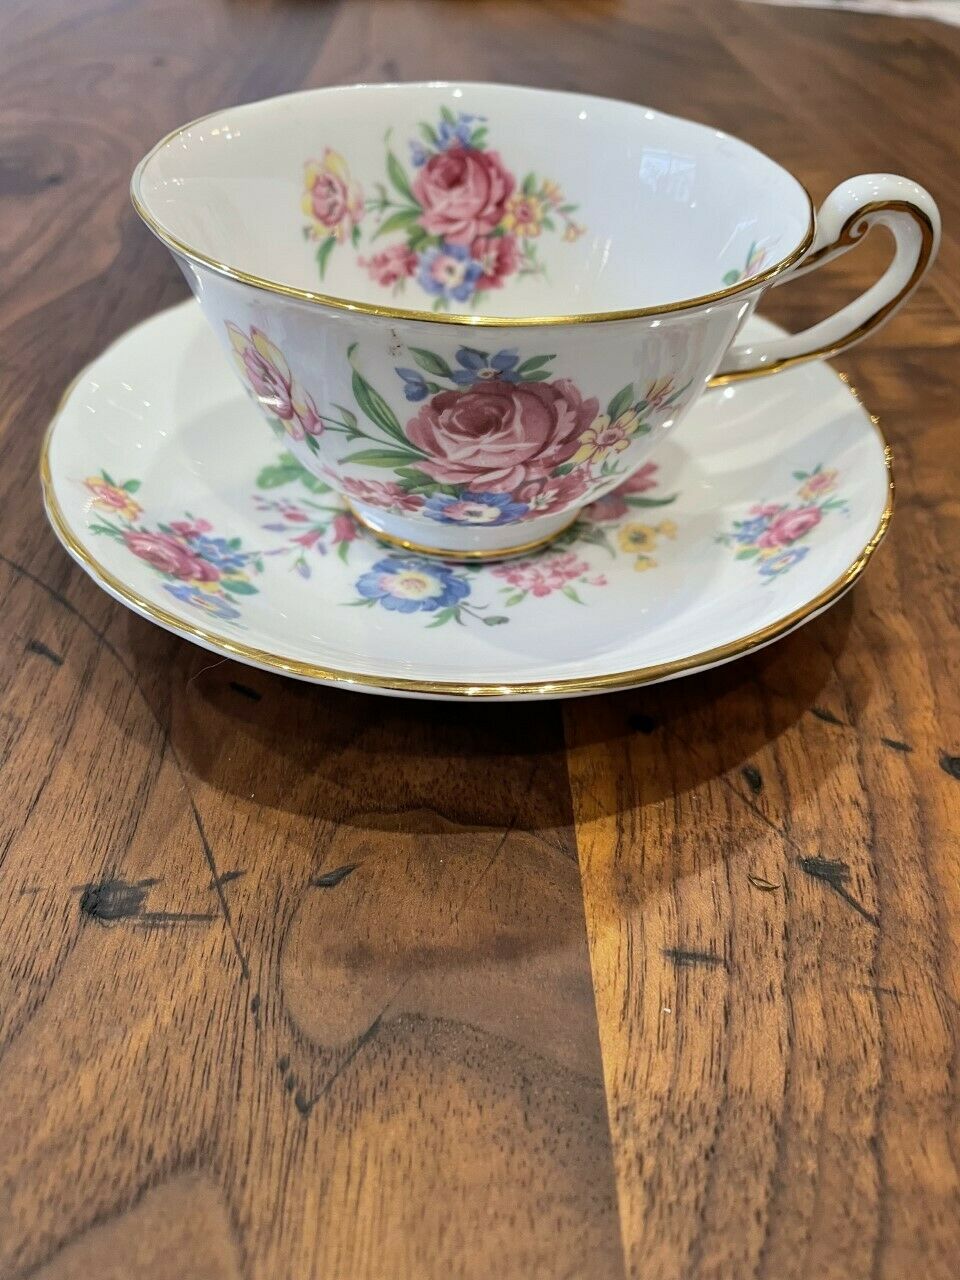 Vintage Royal Chelsea England Tea Cup Teacup & Saucer Gold Leaf Border Roses